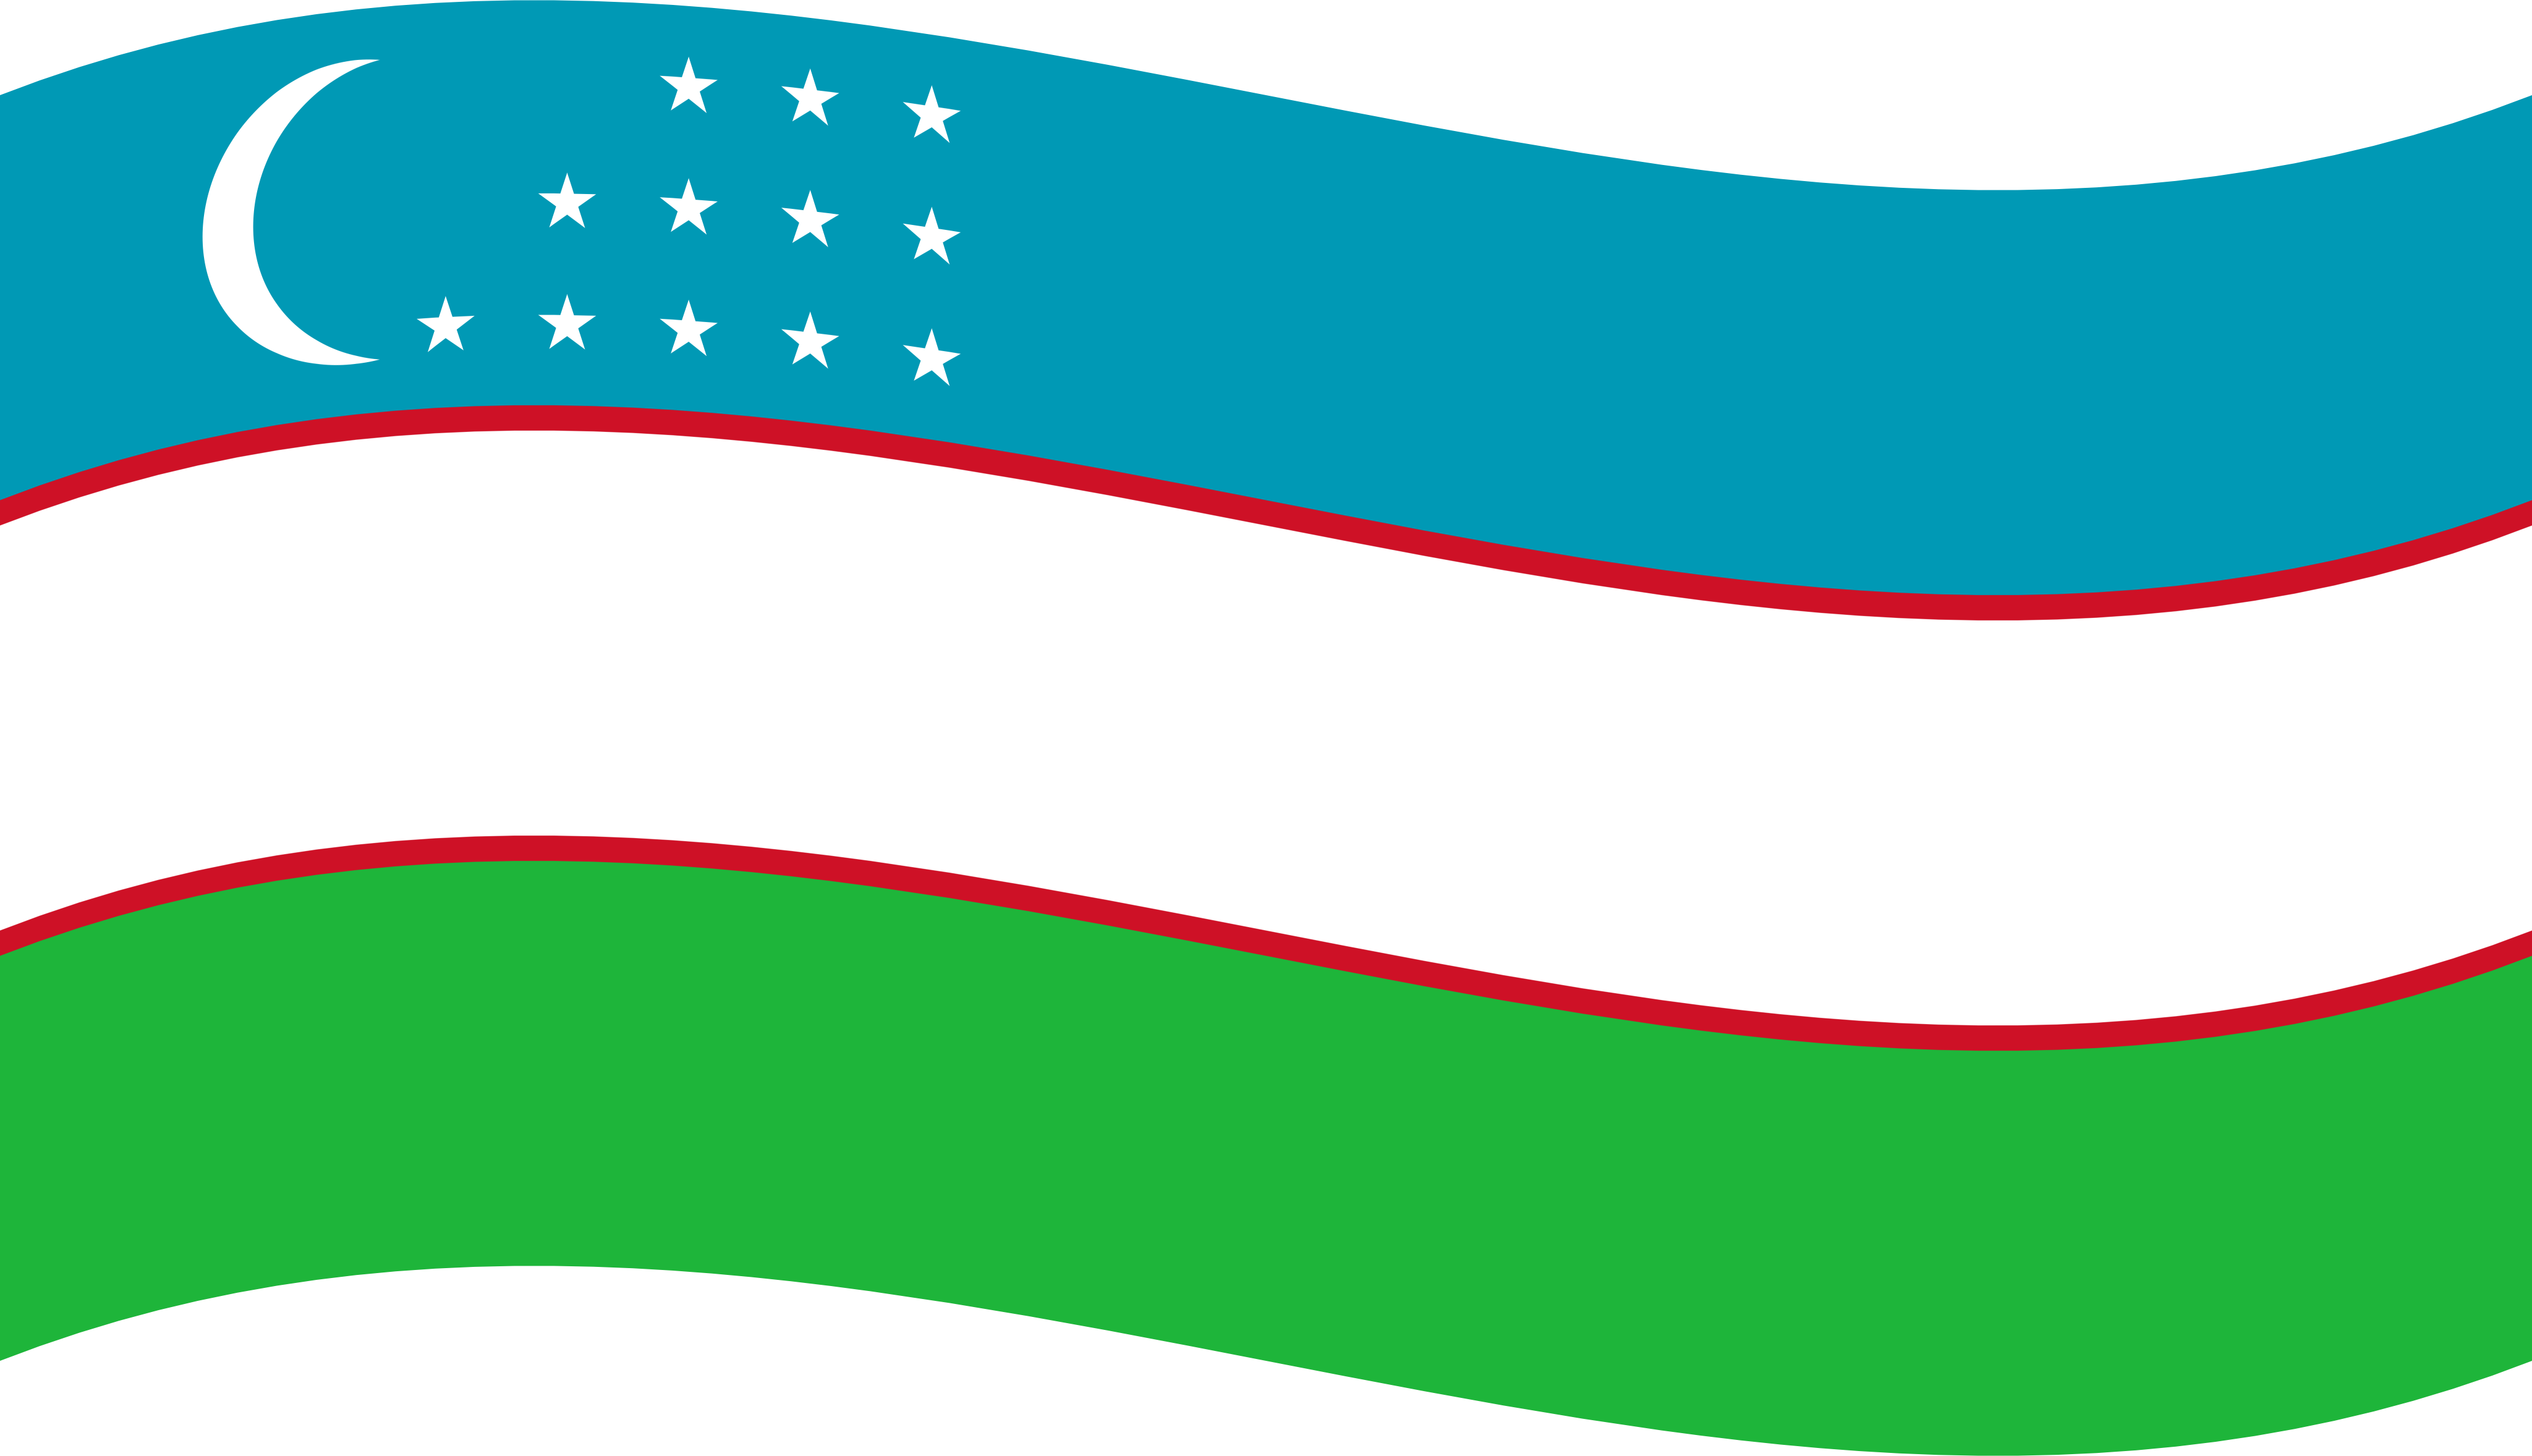 Bayroq rasmi. Флаг Республики Узбекистан. Узбекистан флаг Узбекистана. Флаг Республики Узбекистан лента. Герб и флаг Узбекистана.